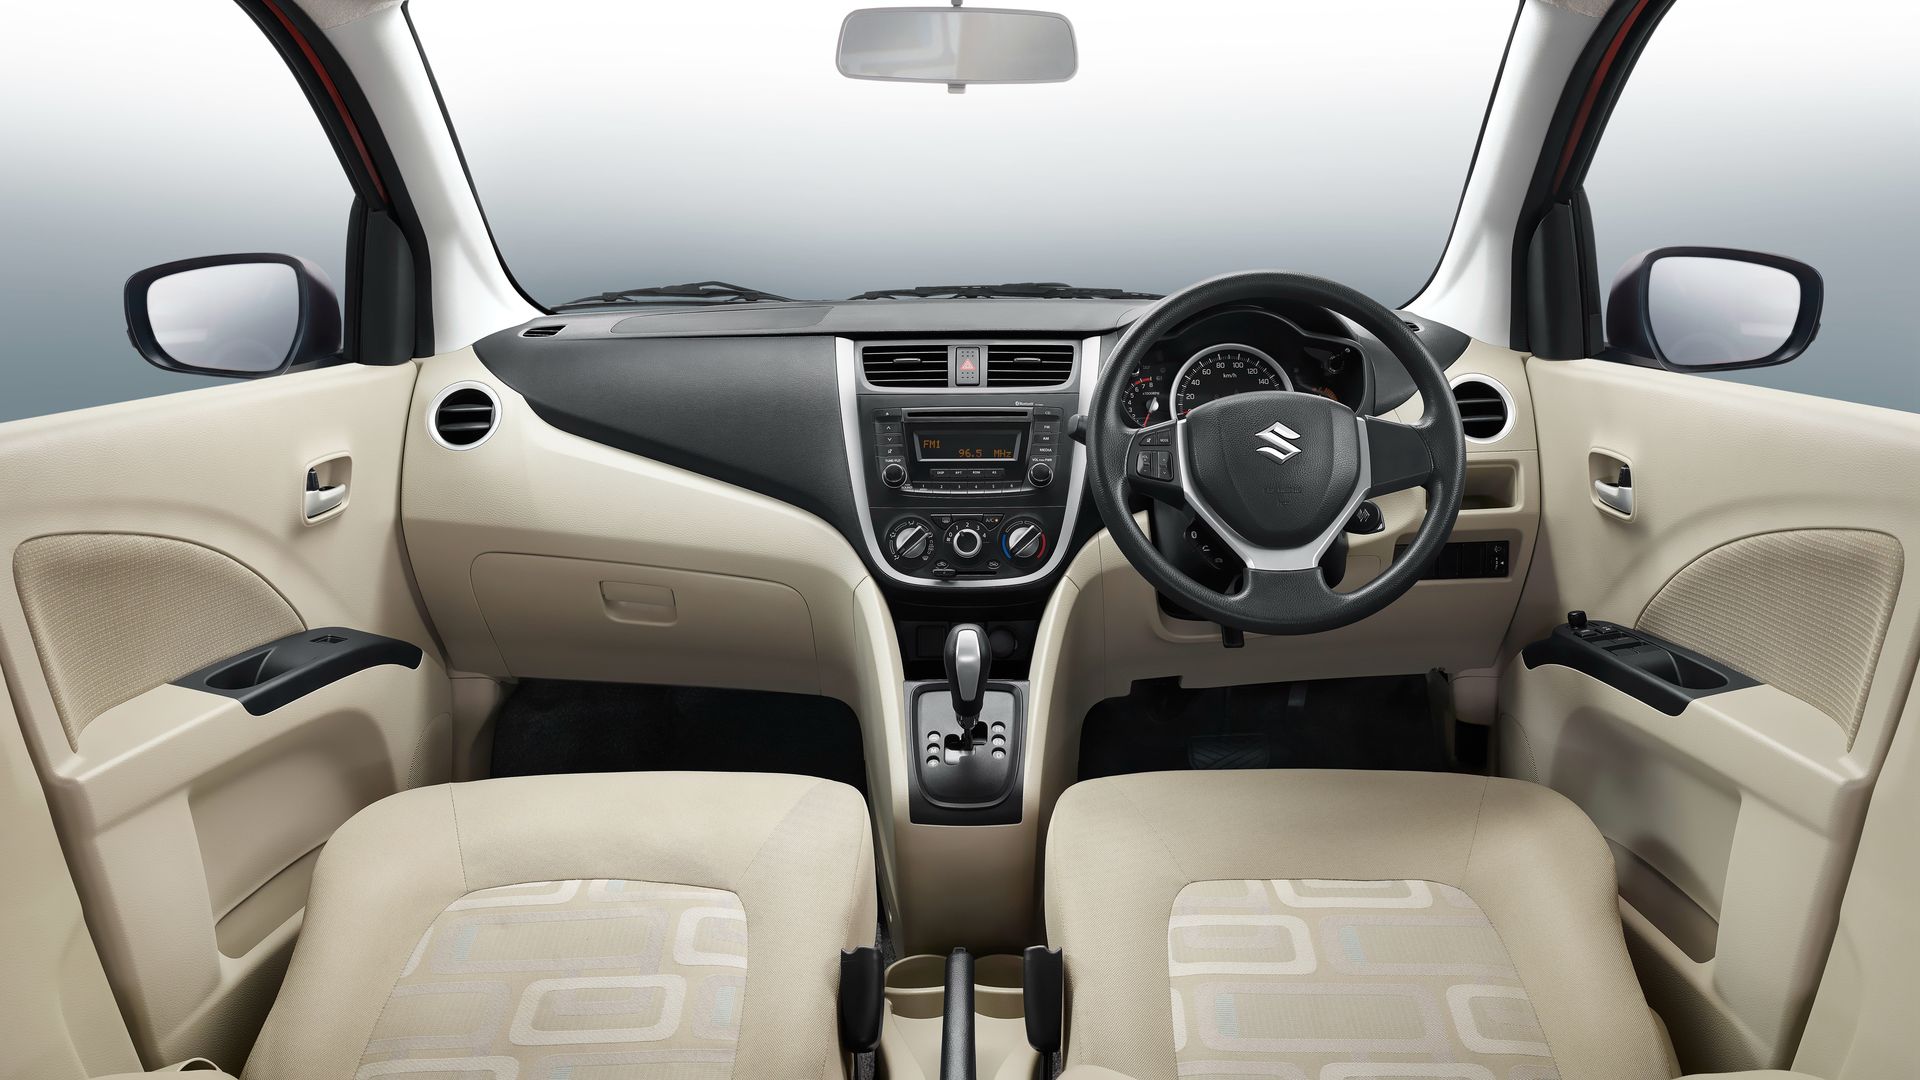 Suzuki Celerio Facelift interior